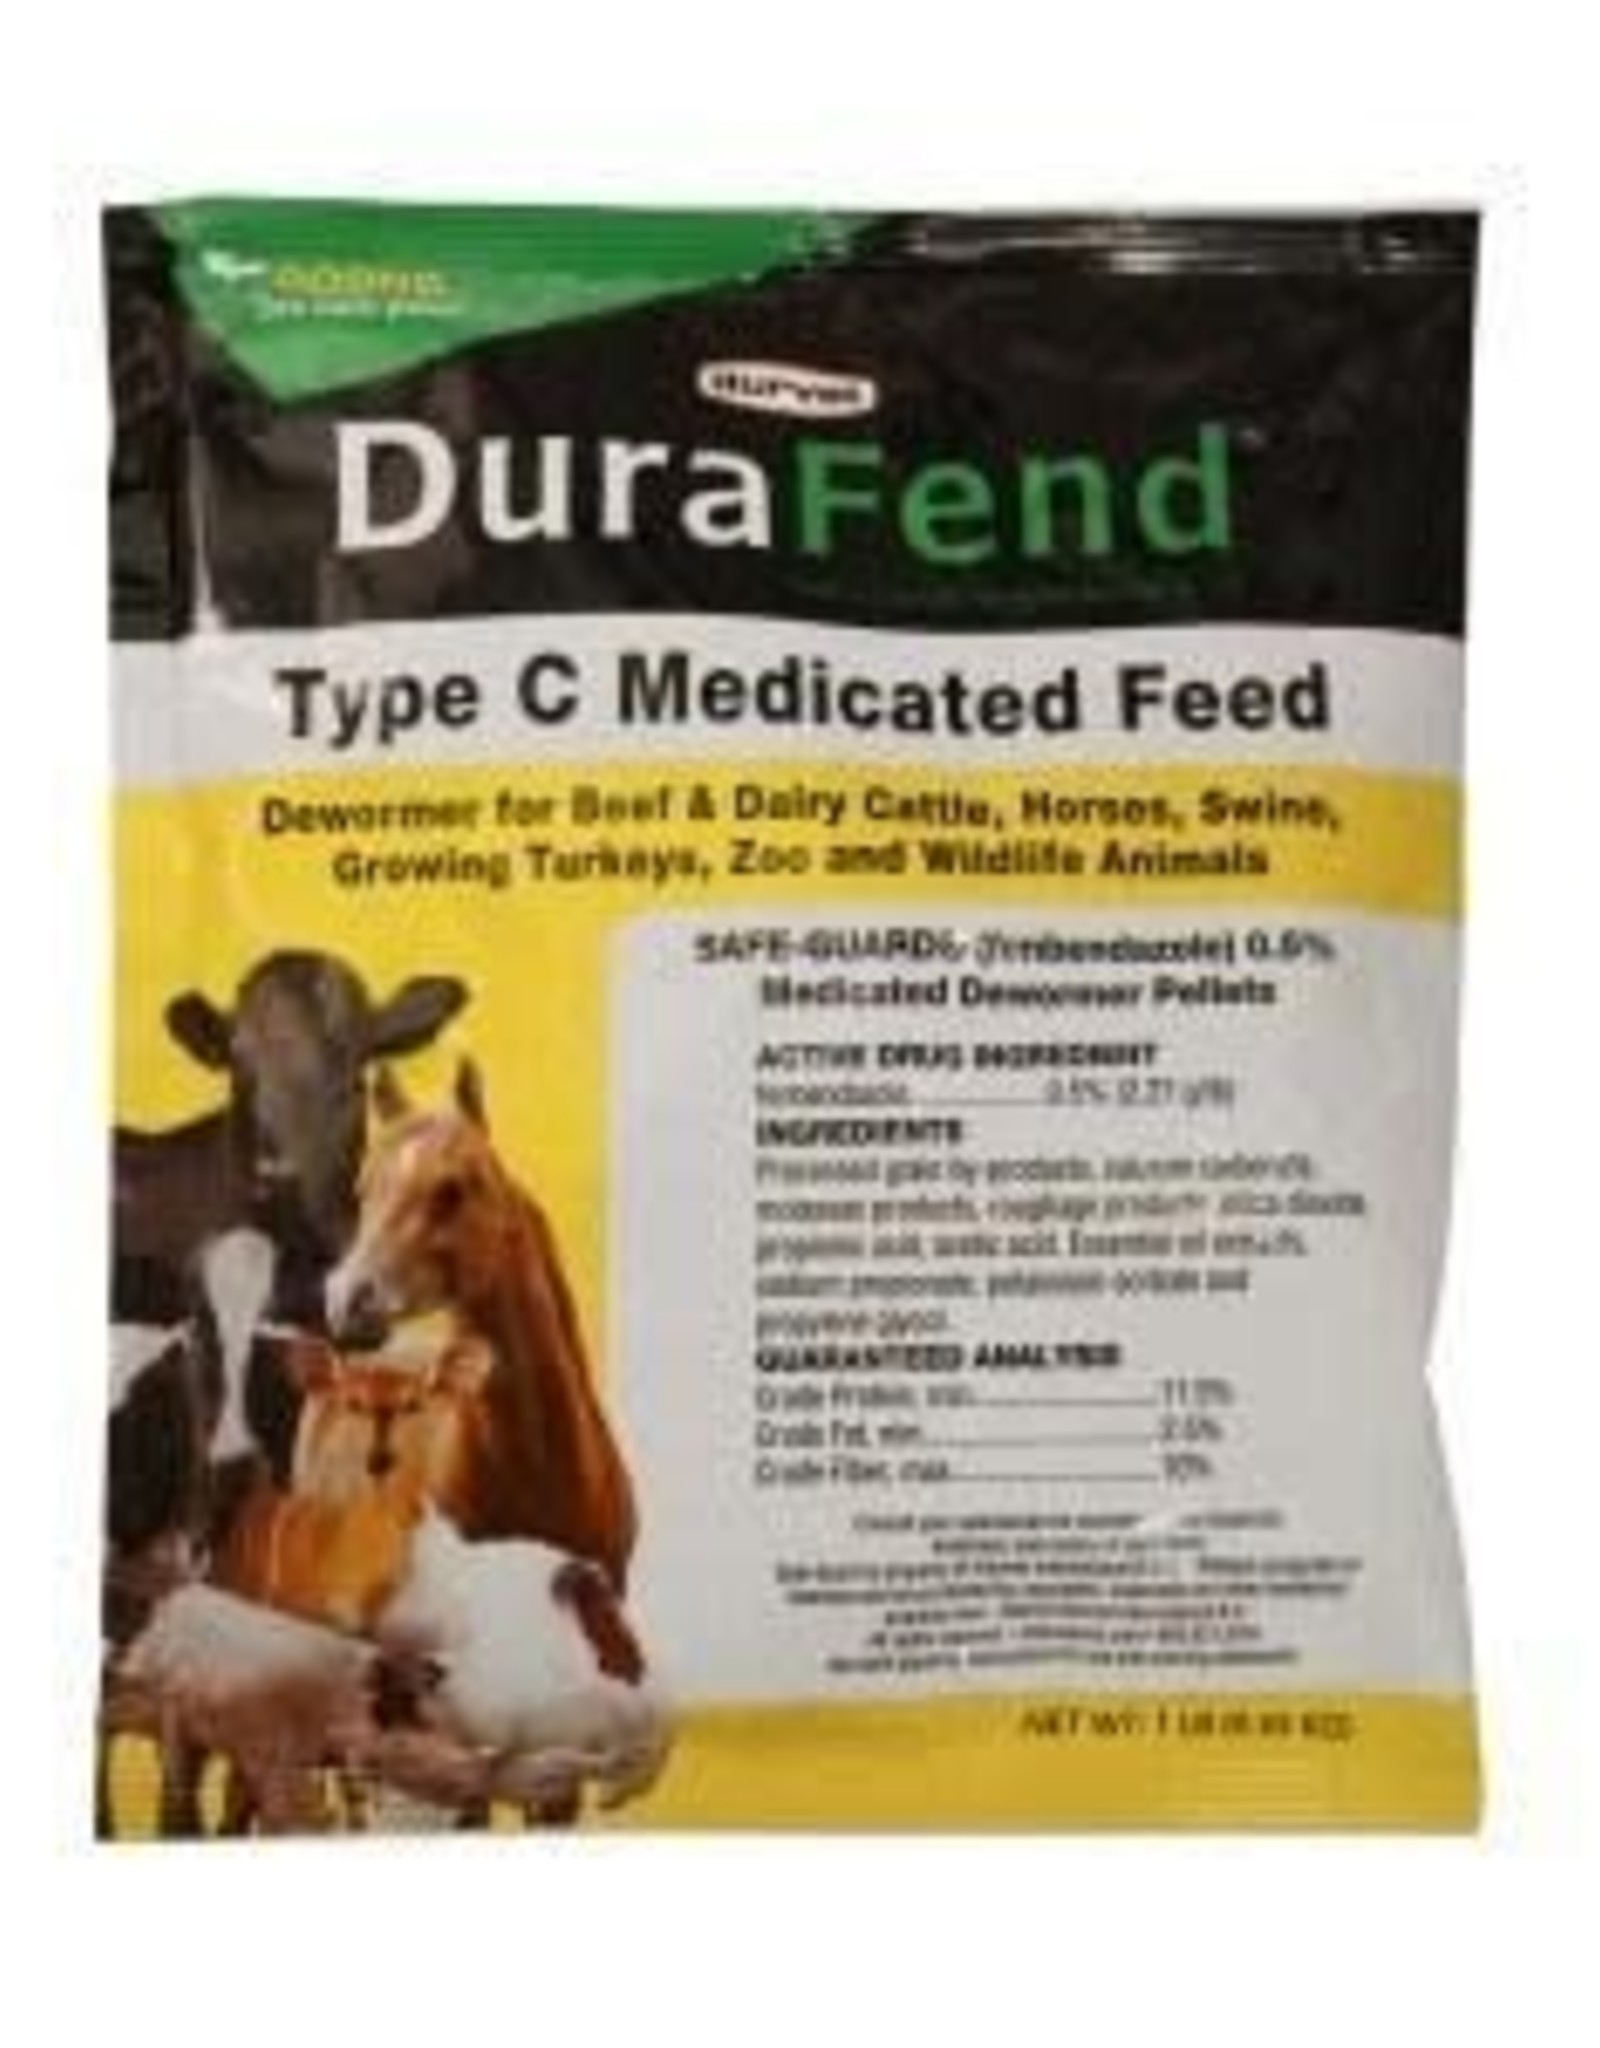 DURVET DURAFEND 1lb (FENBENDAZOL 0.5%) Dewormer